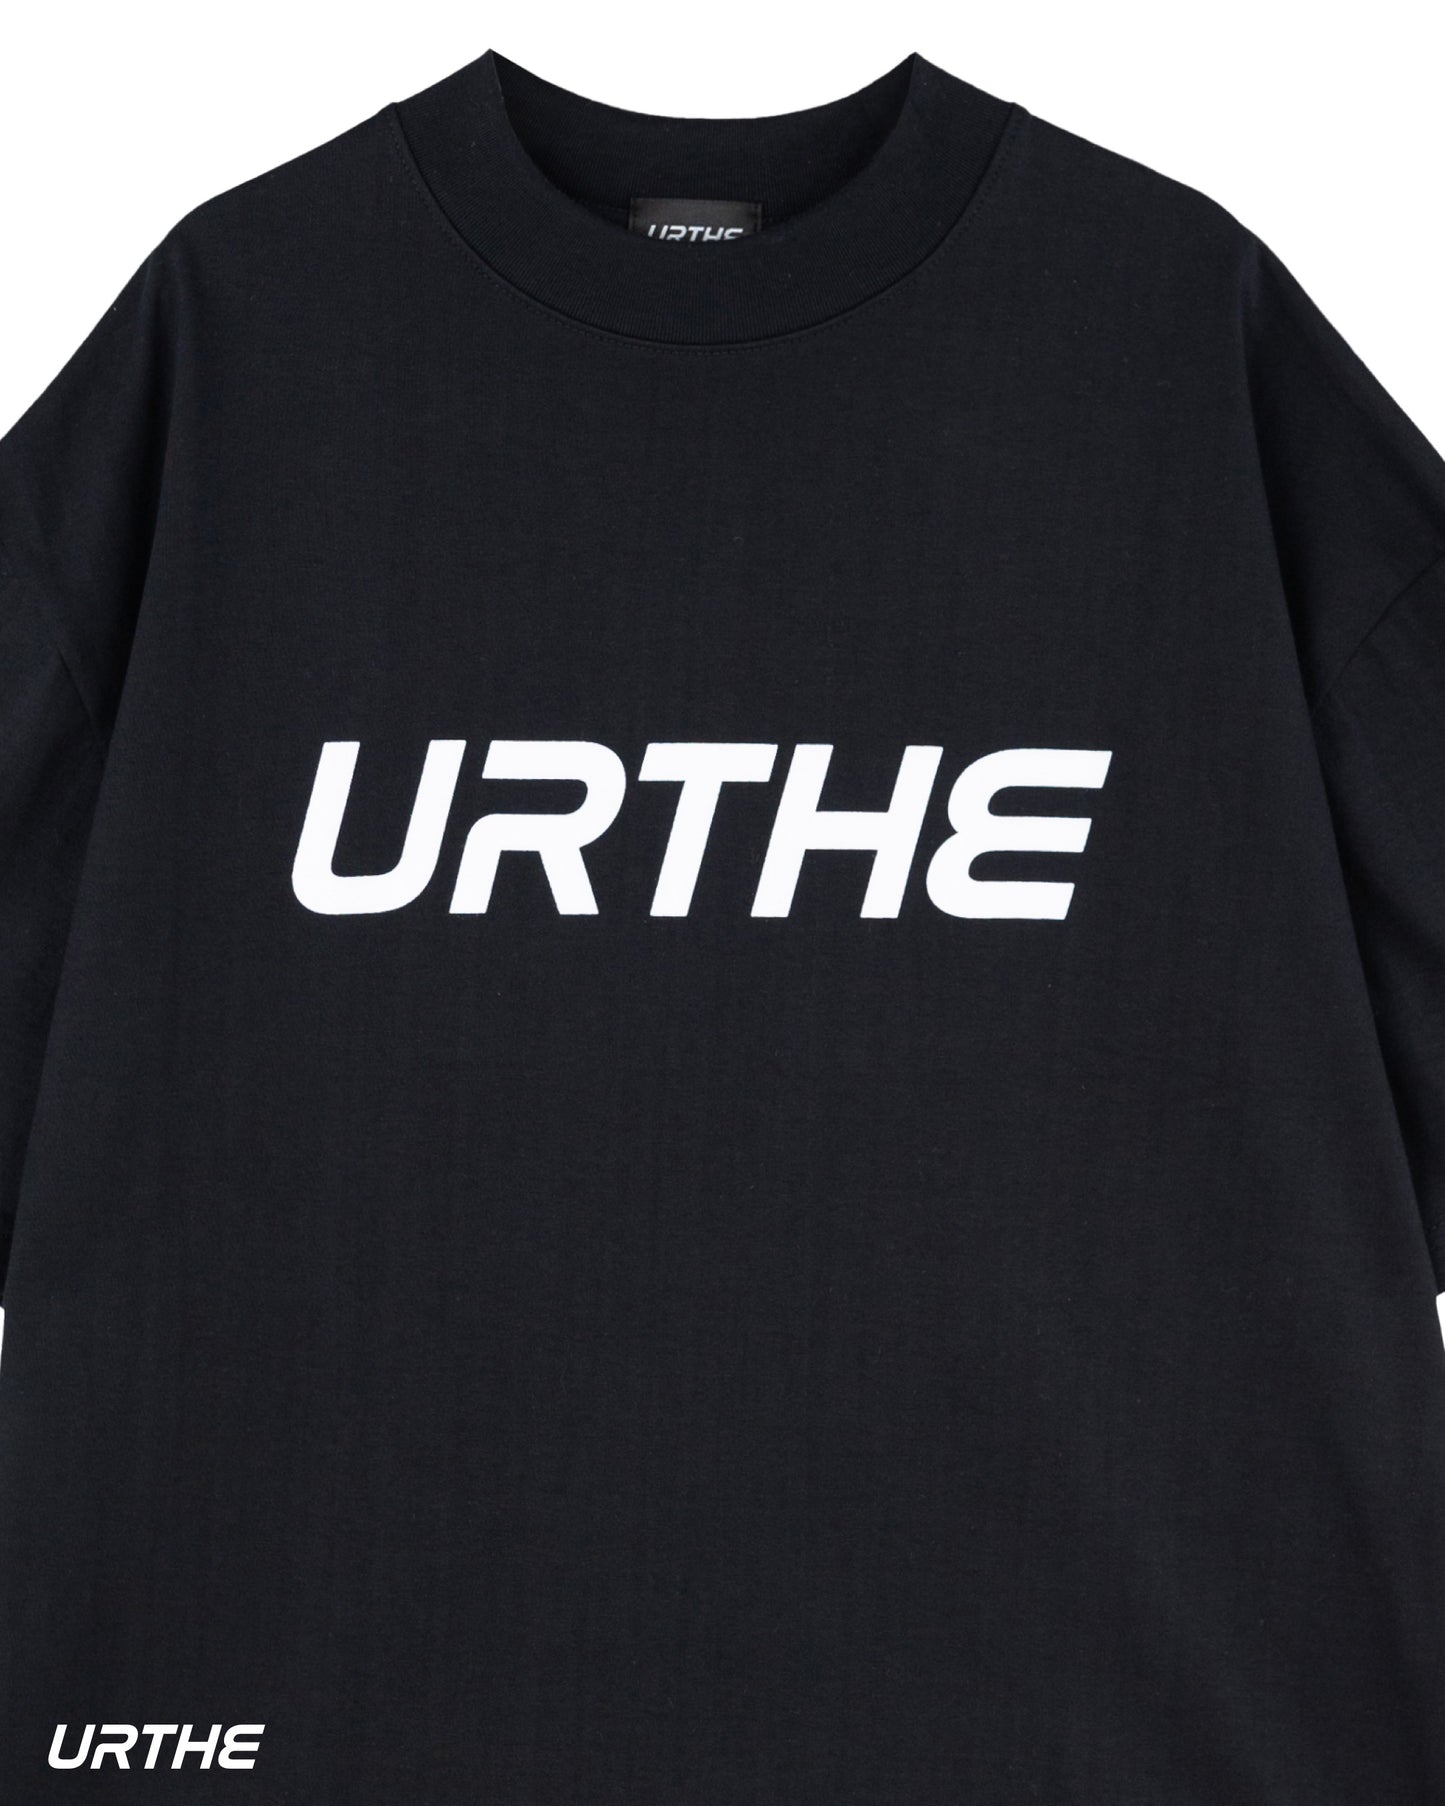 URTHE - เสื้อยืด เเขนสั้น สกรีนลาย รุ่น HIGH NECK